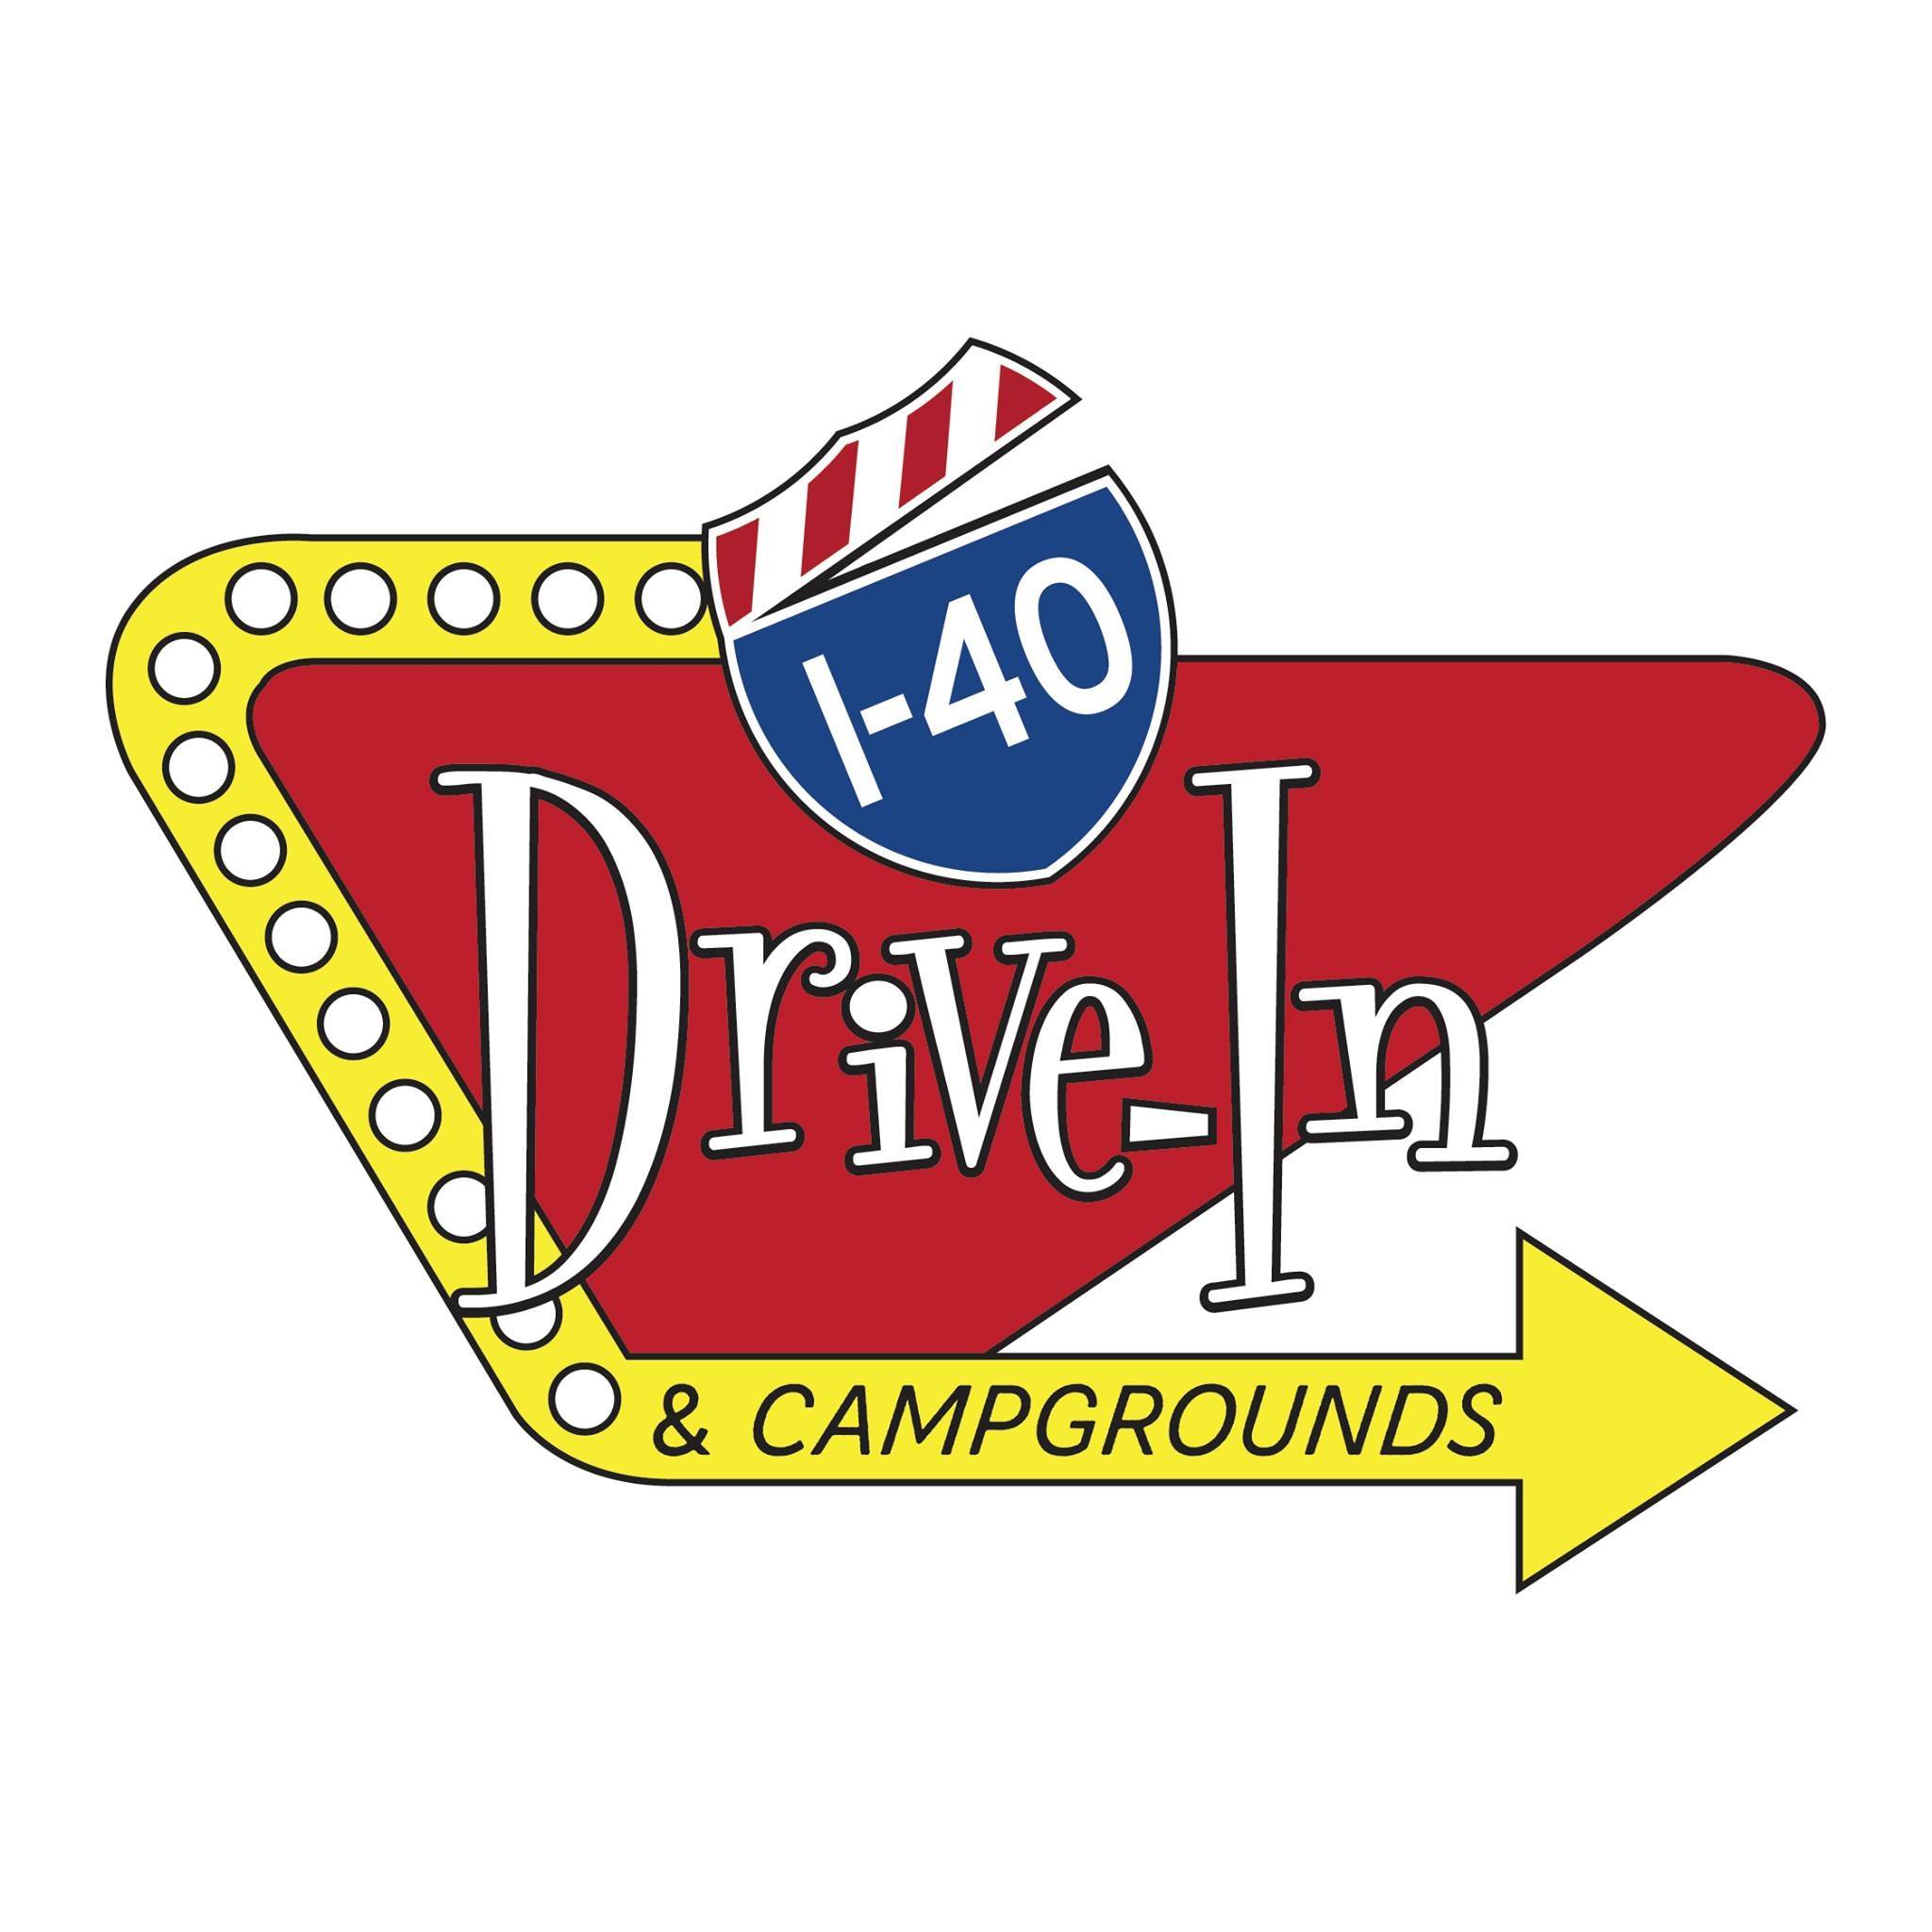 I-40 Drive-in Logo